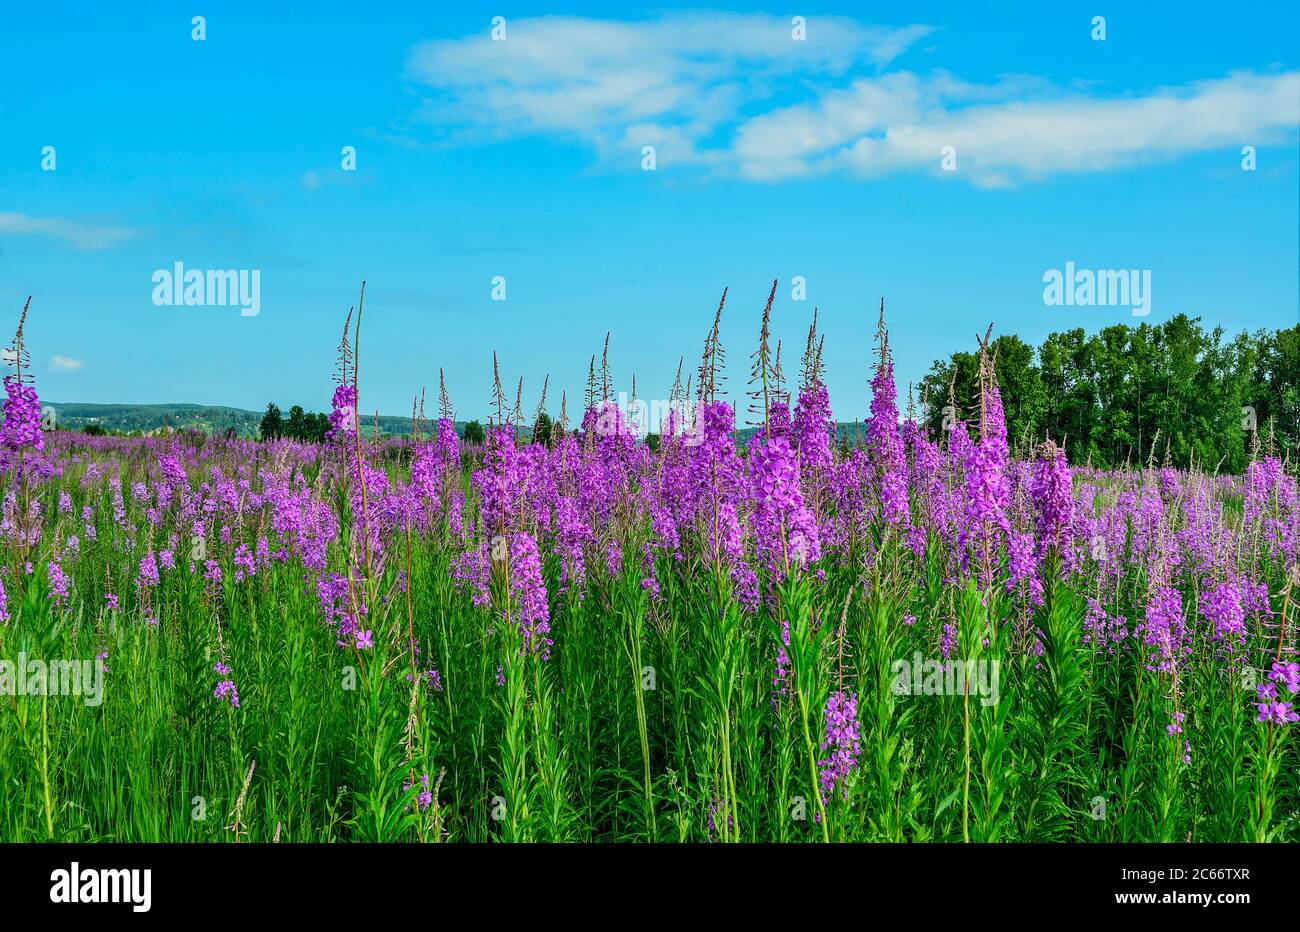 Prairie d'été avec fleurs de pompier rose couvertes. Paysage estival pittoresque - fleurs Chamaenerion angustifolium ou Epilobium angutif Banque D'Images